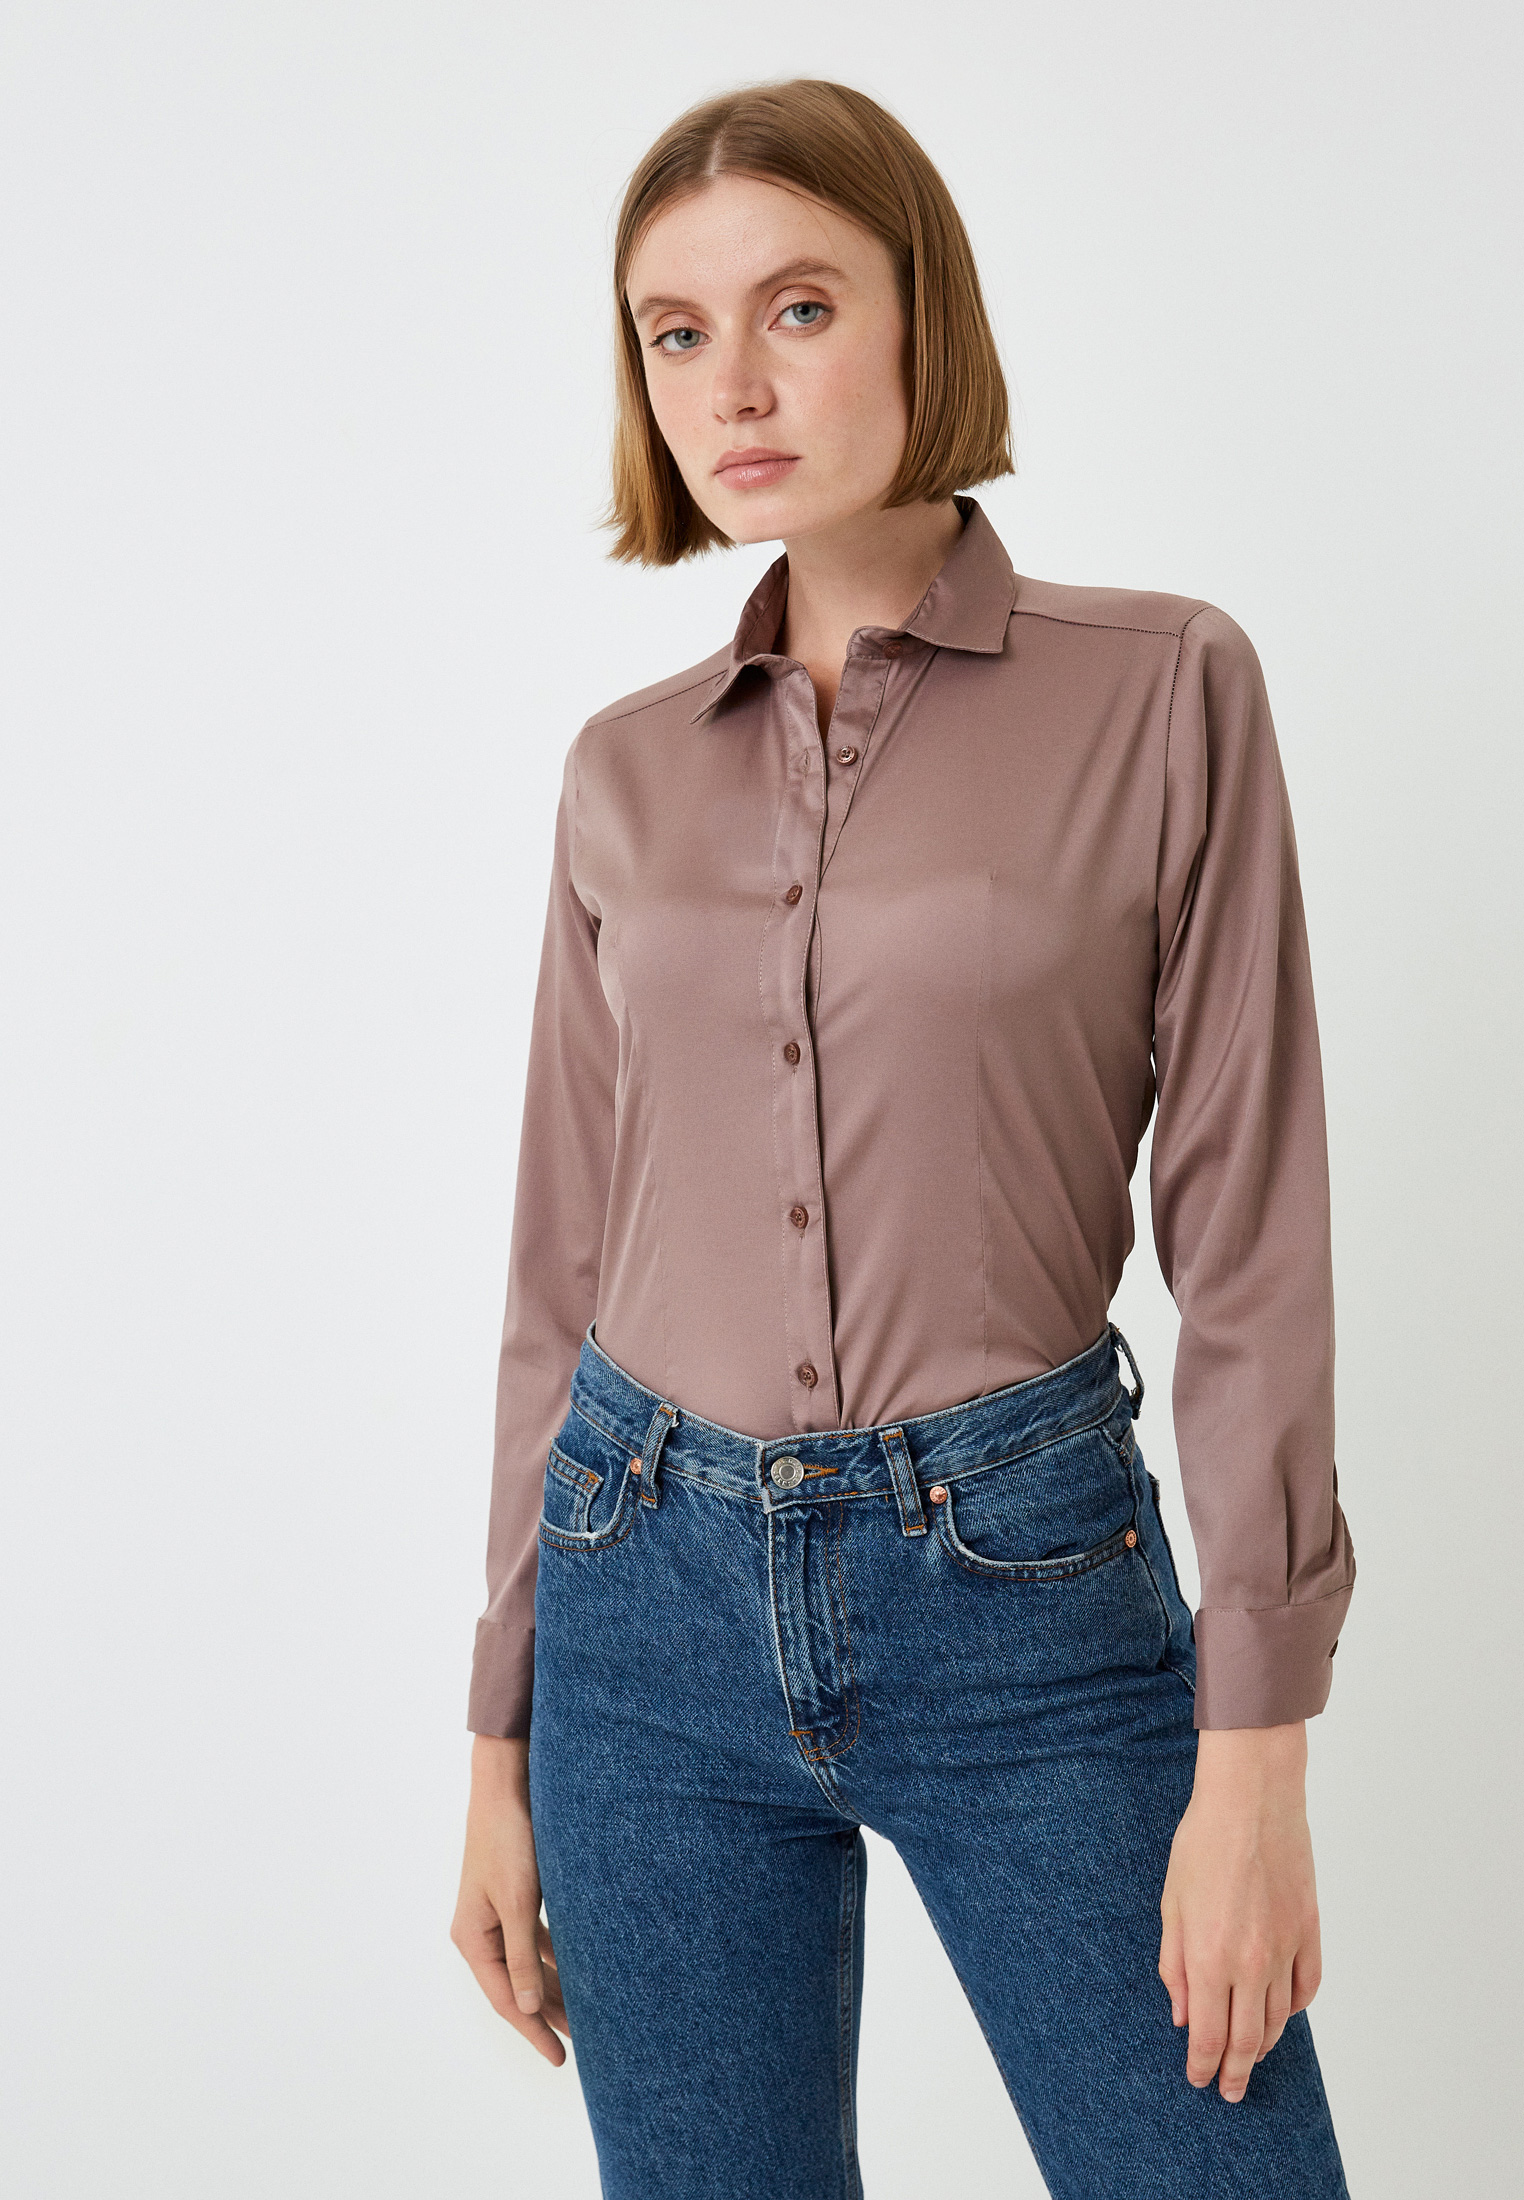 Женские рубашки с длинным рукавом Basics & More BA512741